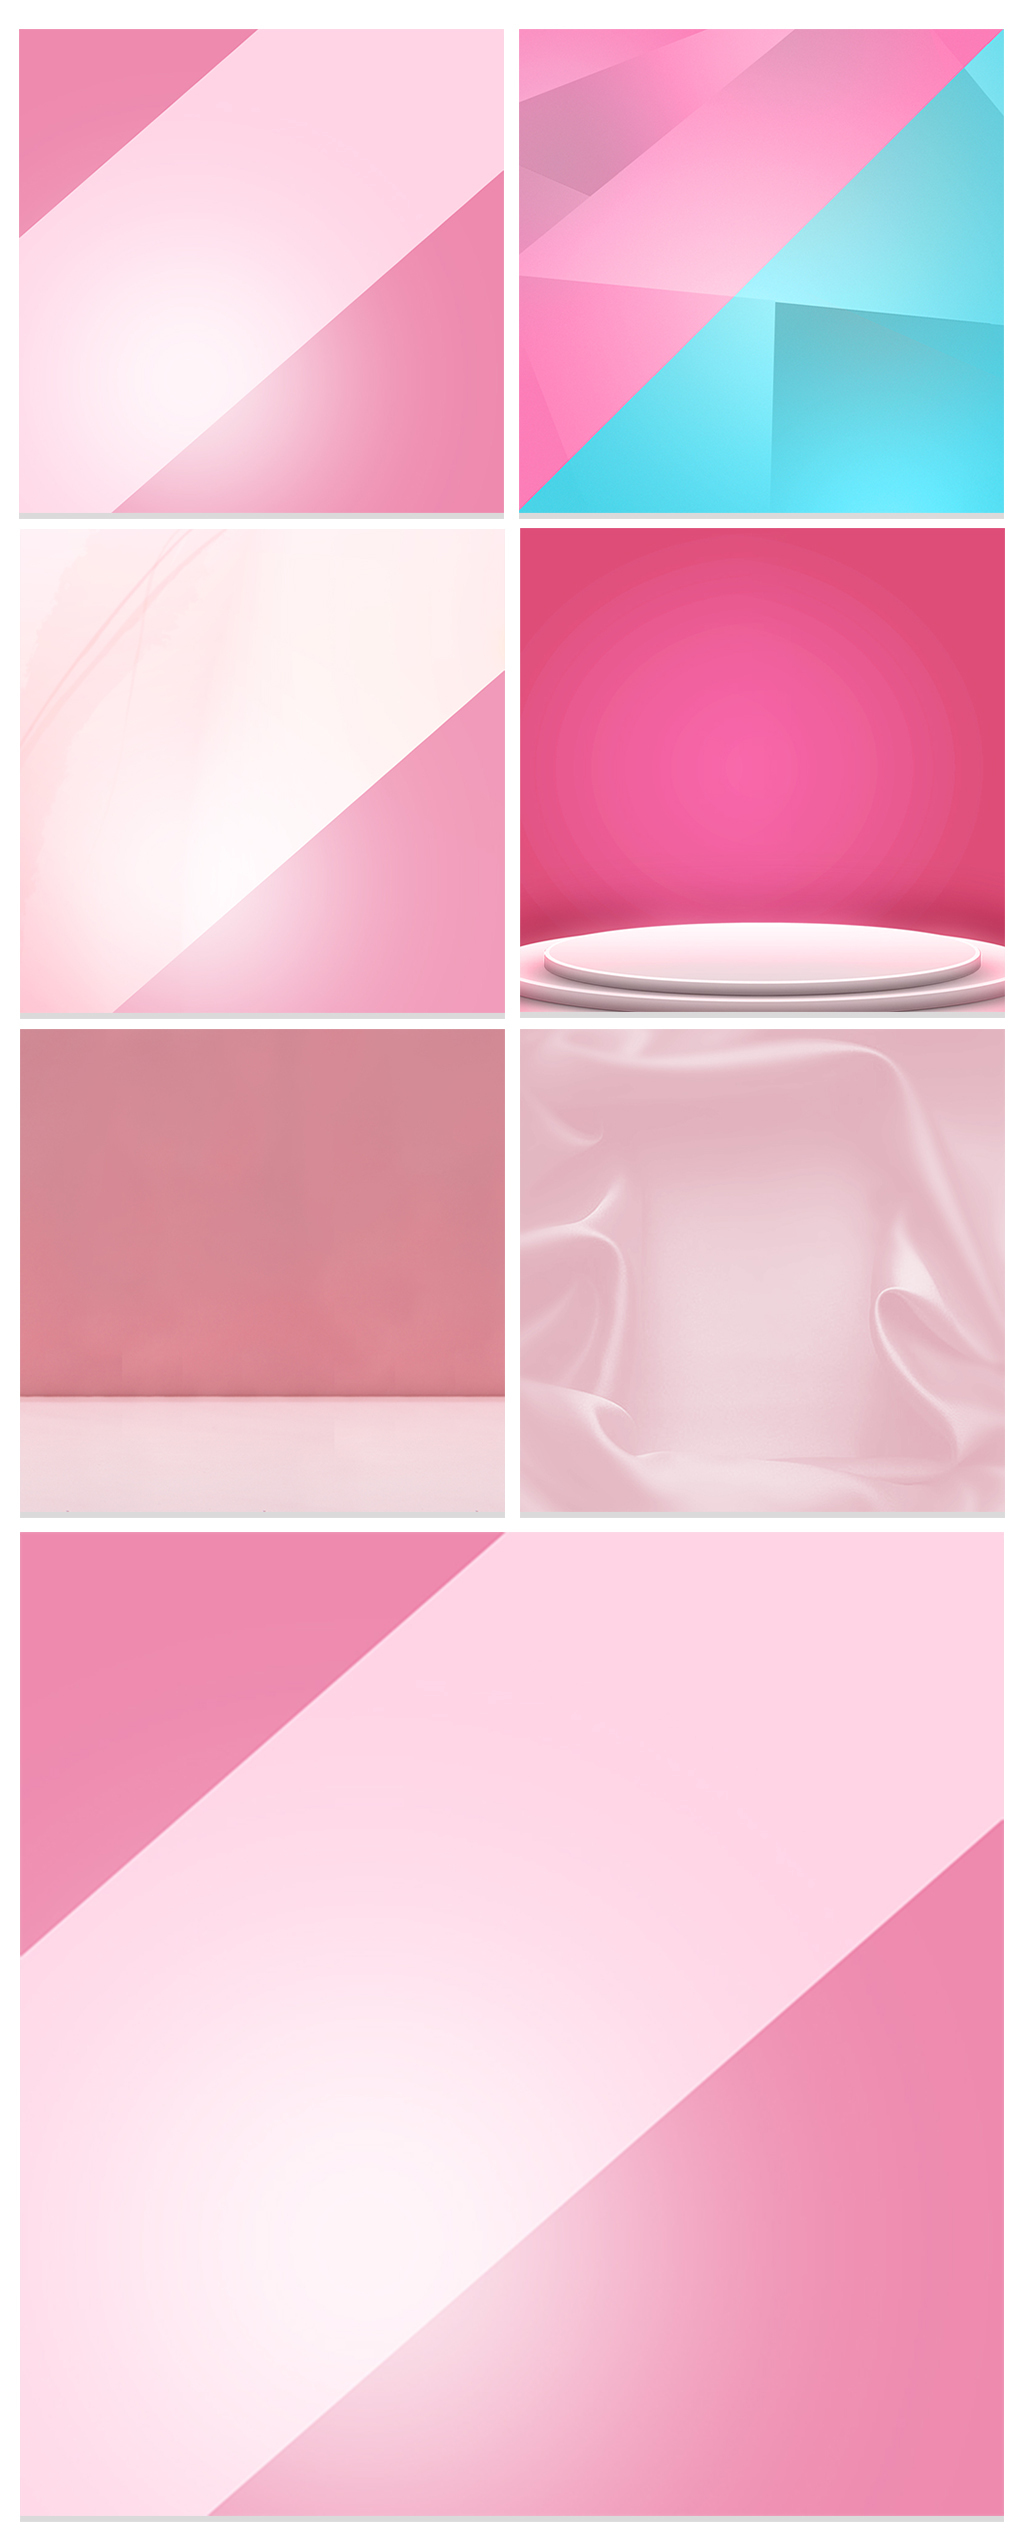 粉色女性用品主图促销背景图图片